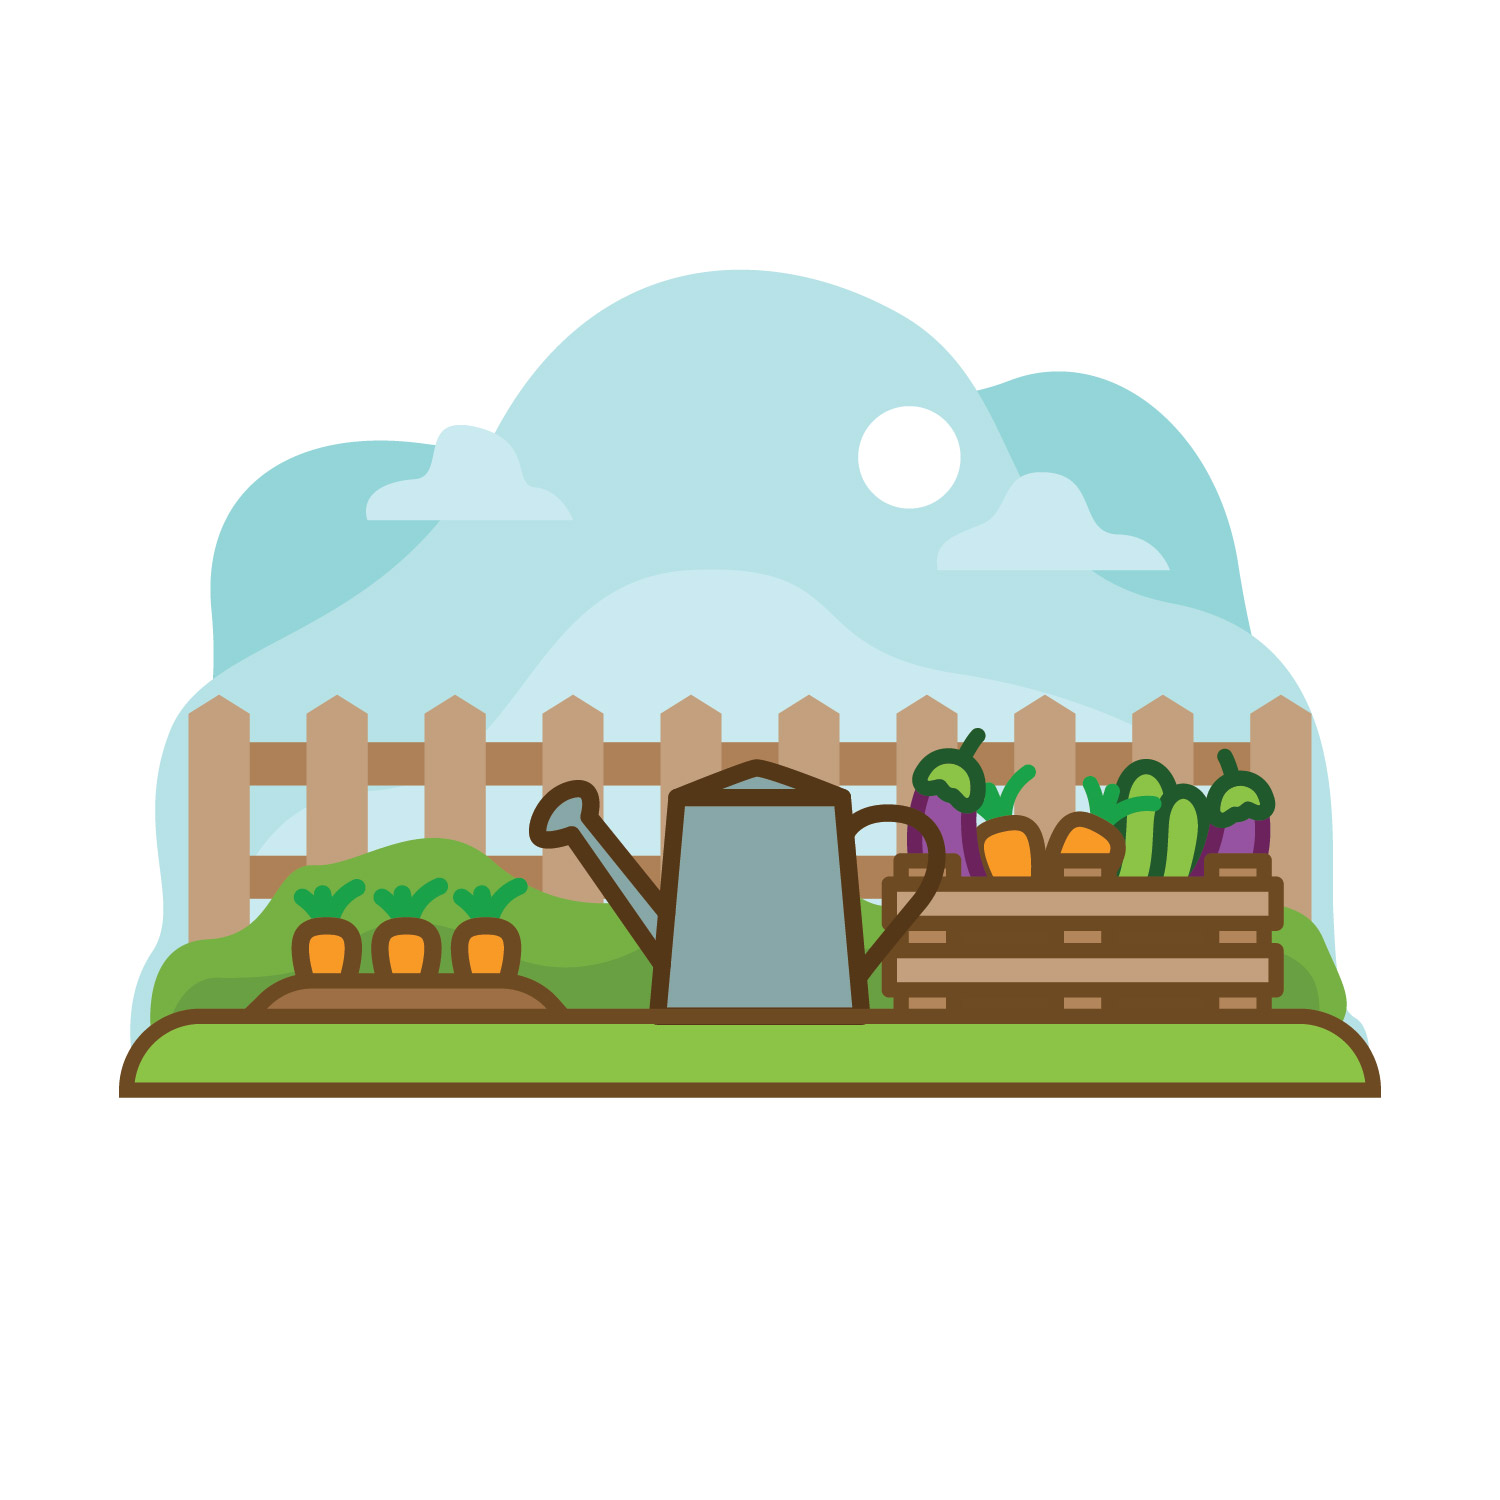 Download Vegetable Garden Vector Illustration - Download Free ...